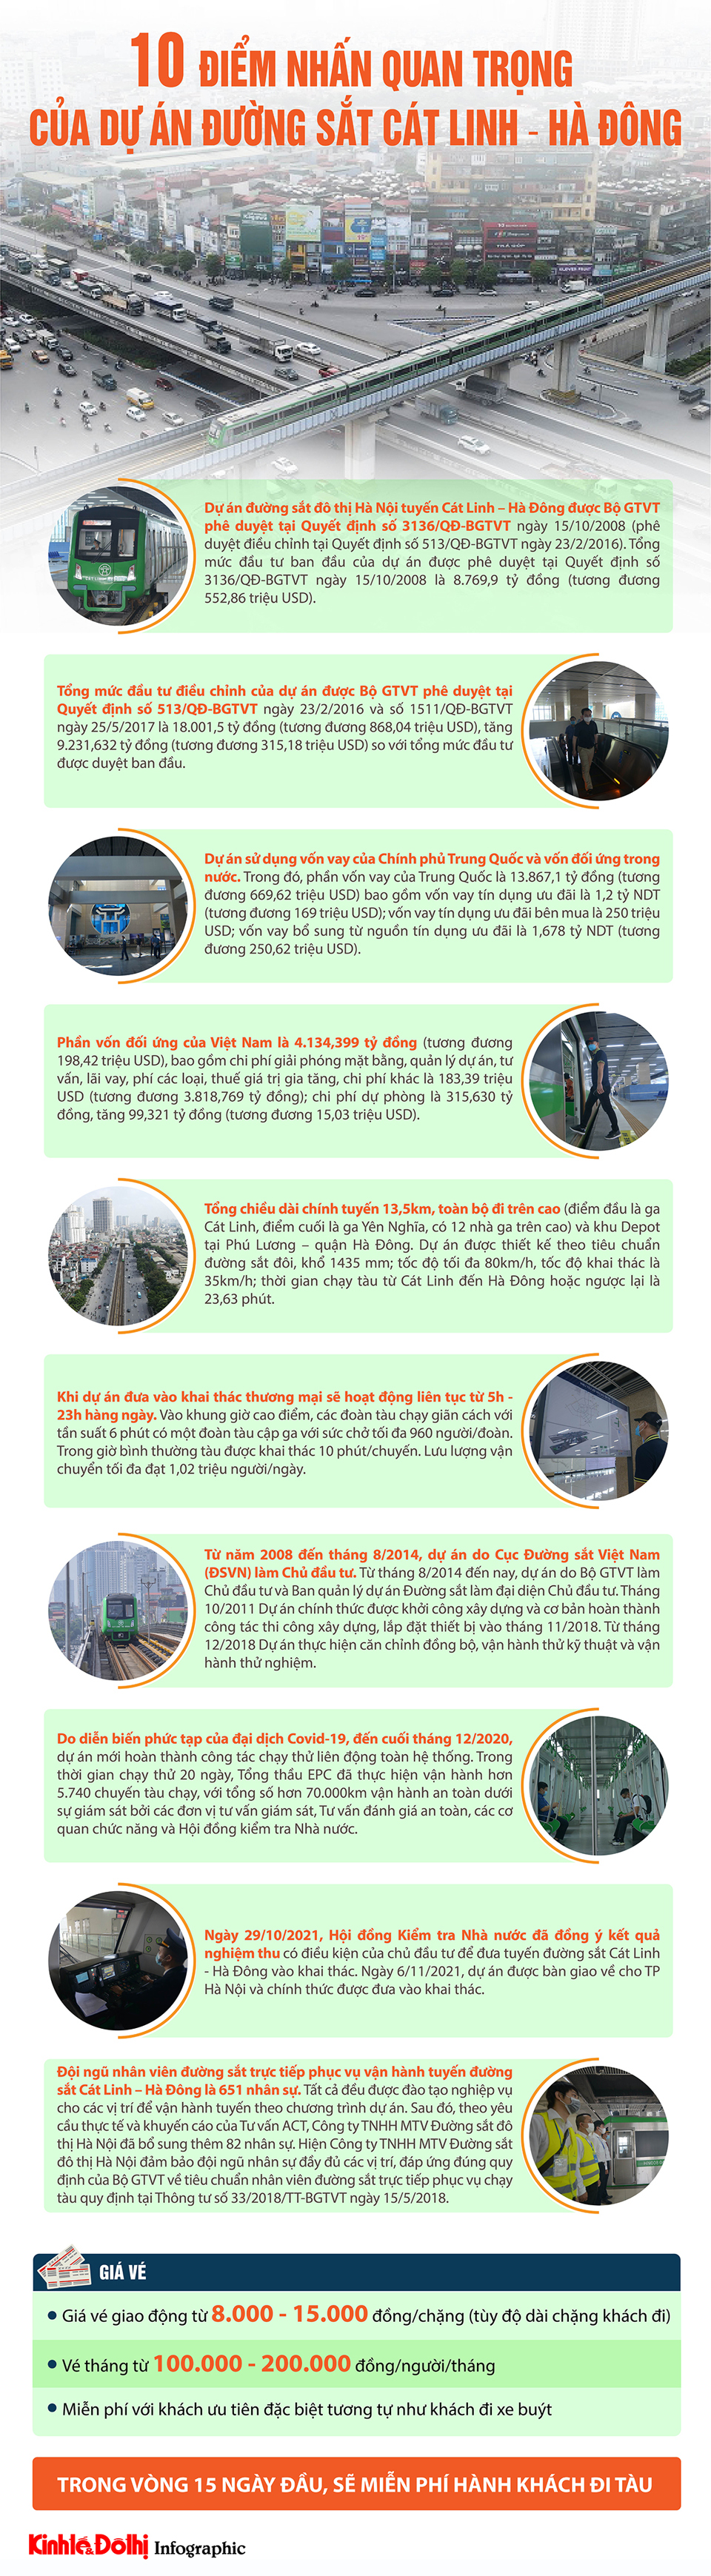 [Infographic] 10 điểm nhấn của dự án đường sắt Cát Linh - Hà Đông - Ảnh 1